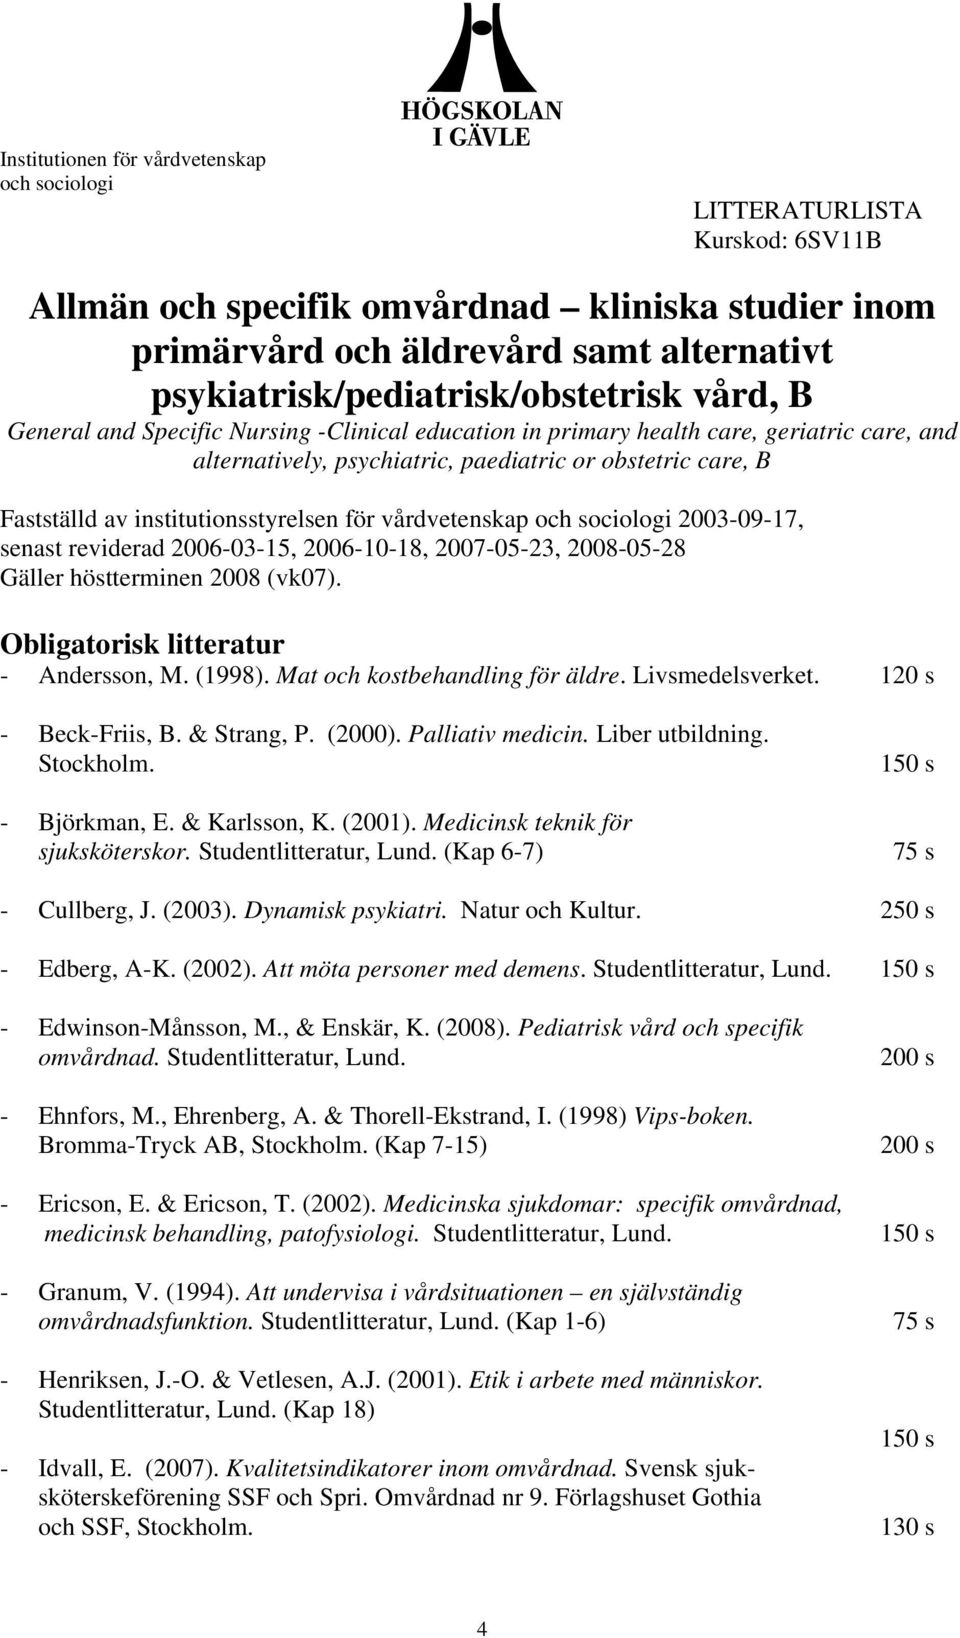 reviderad 2006-03-15, 2006-10-18, 2007-05-23, 2008-05-28 Gäller höstterminen 2008 (vk07). Obligatorisk litteratur - Andersson, M. (1998). Mat och kostbehandling för äldre. Livsmedelsverket.